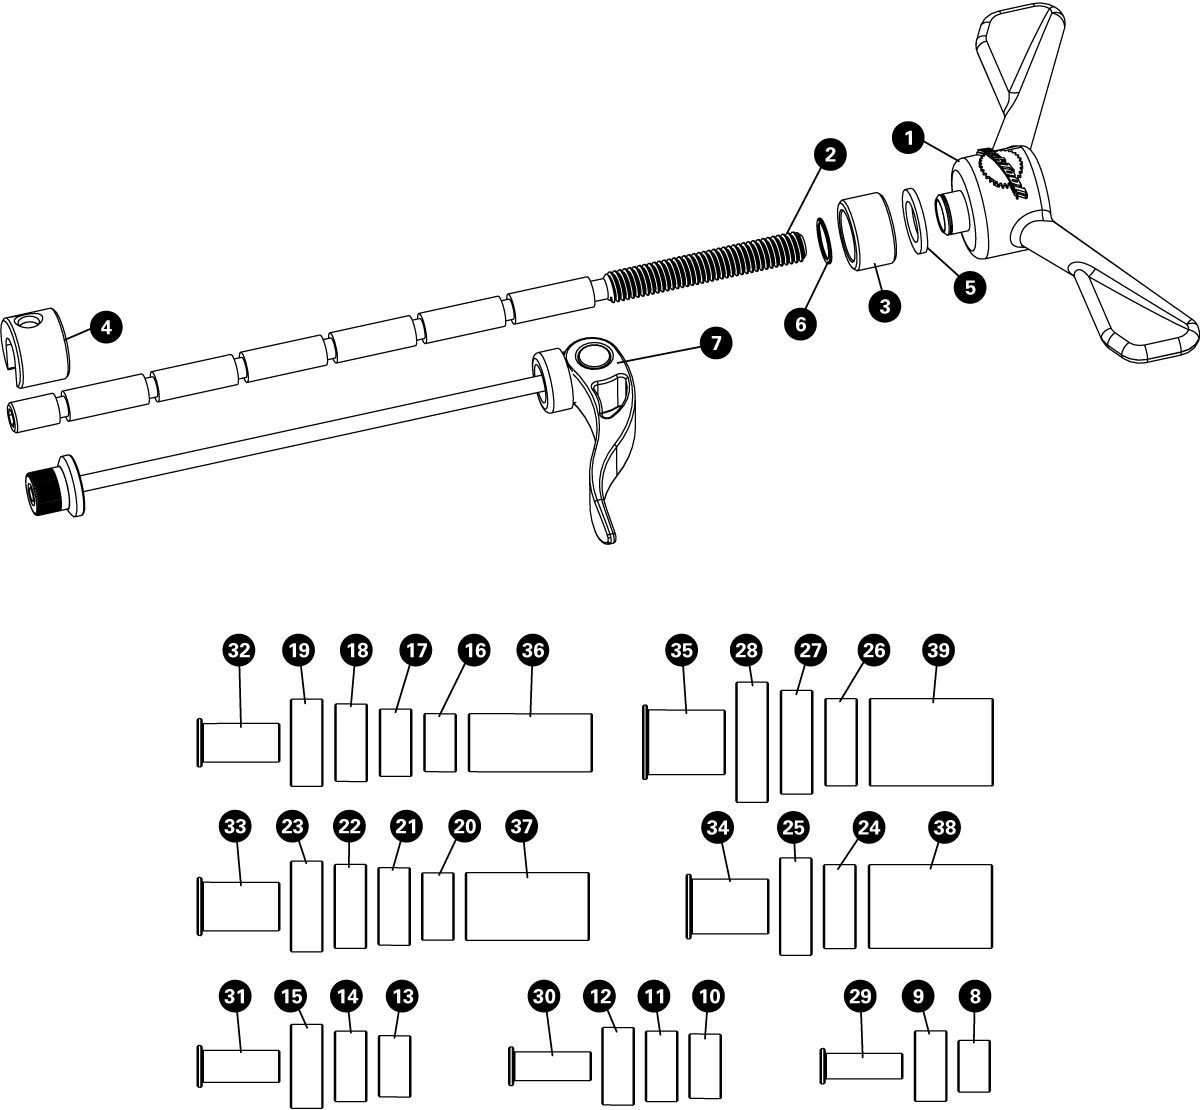 Parts diagram for HBP-1 Hub Bearing Press Set, click to enlarge